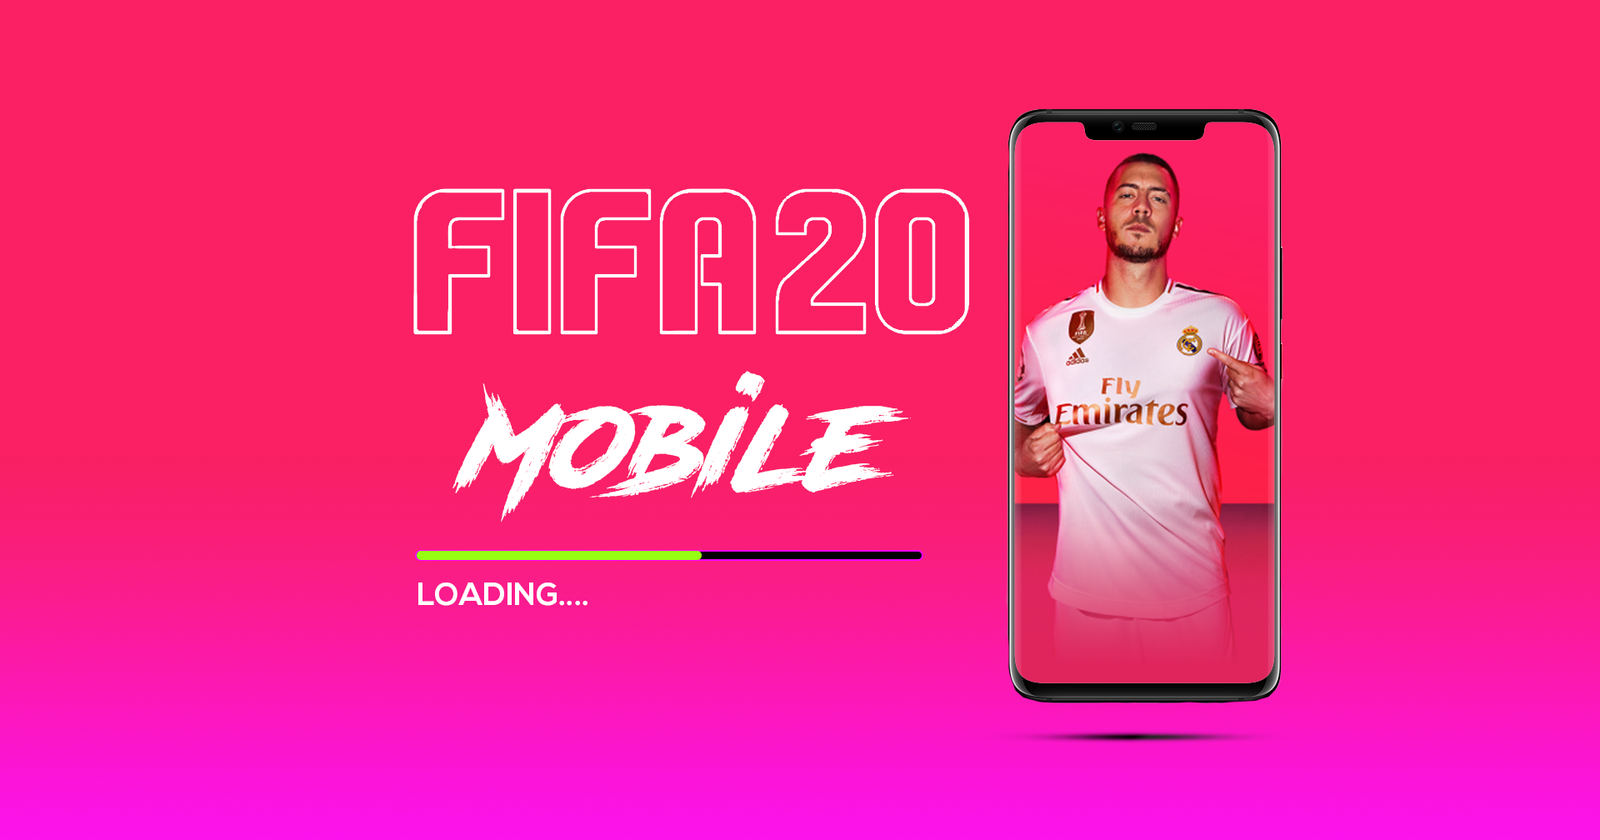 FIFA 2020 para Android (Mobile) - O que esperar? - TechNews Brasil